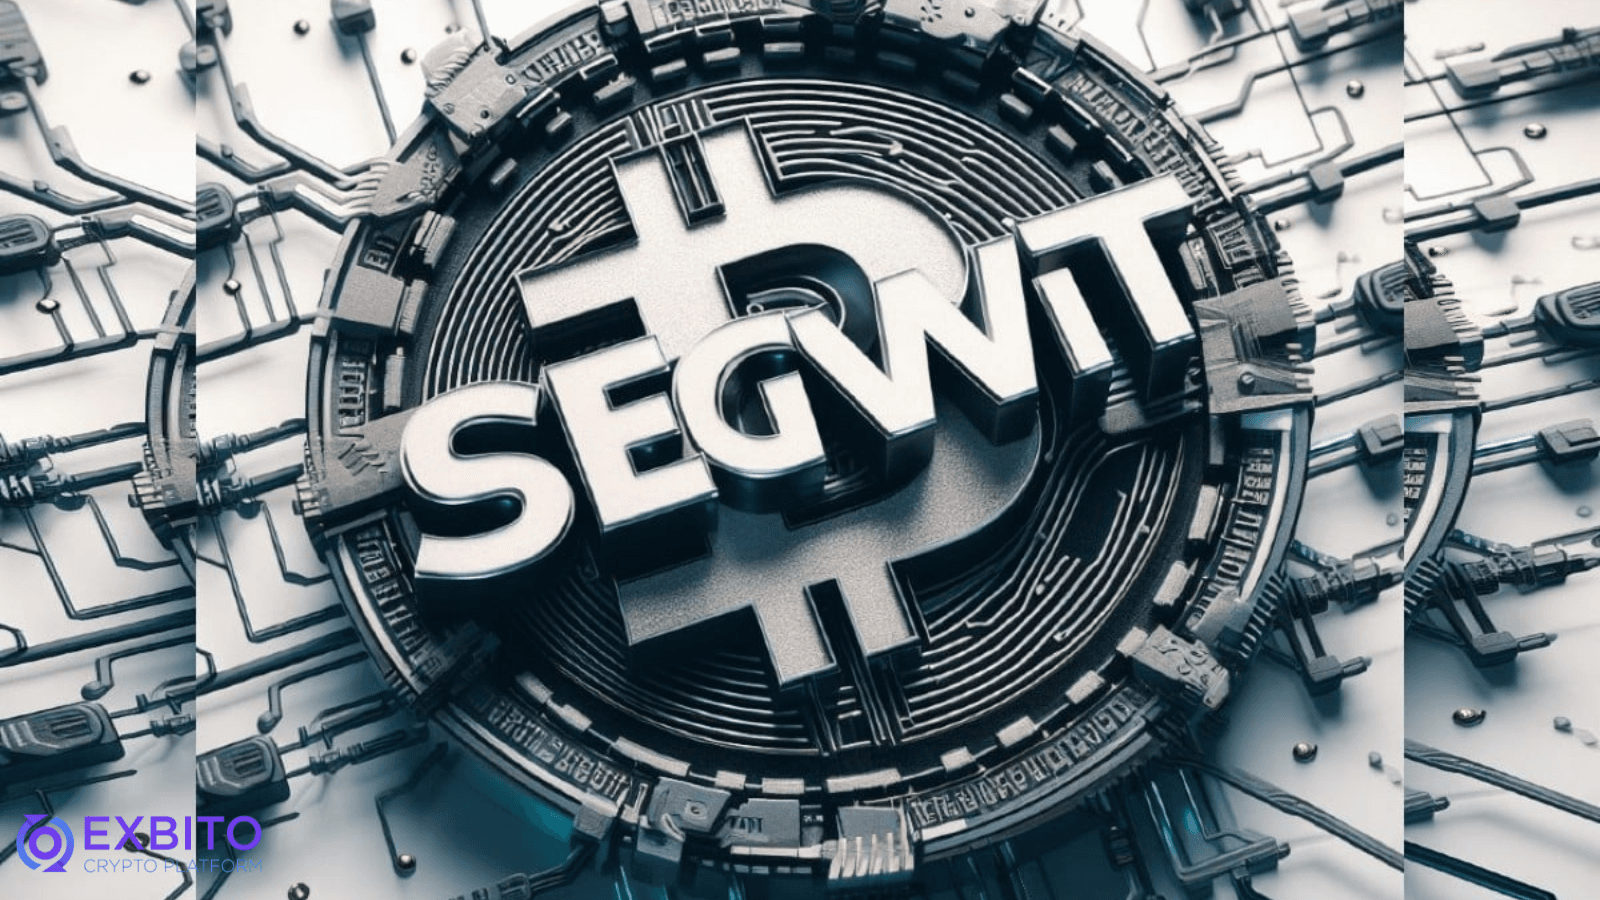 مرحله 3: یک آدرس SegWit ایجاد کنید